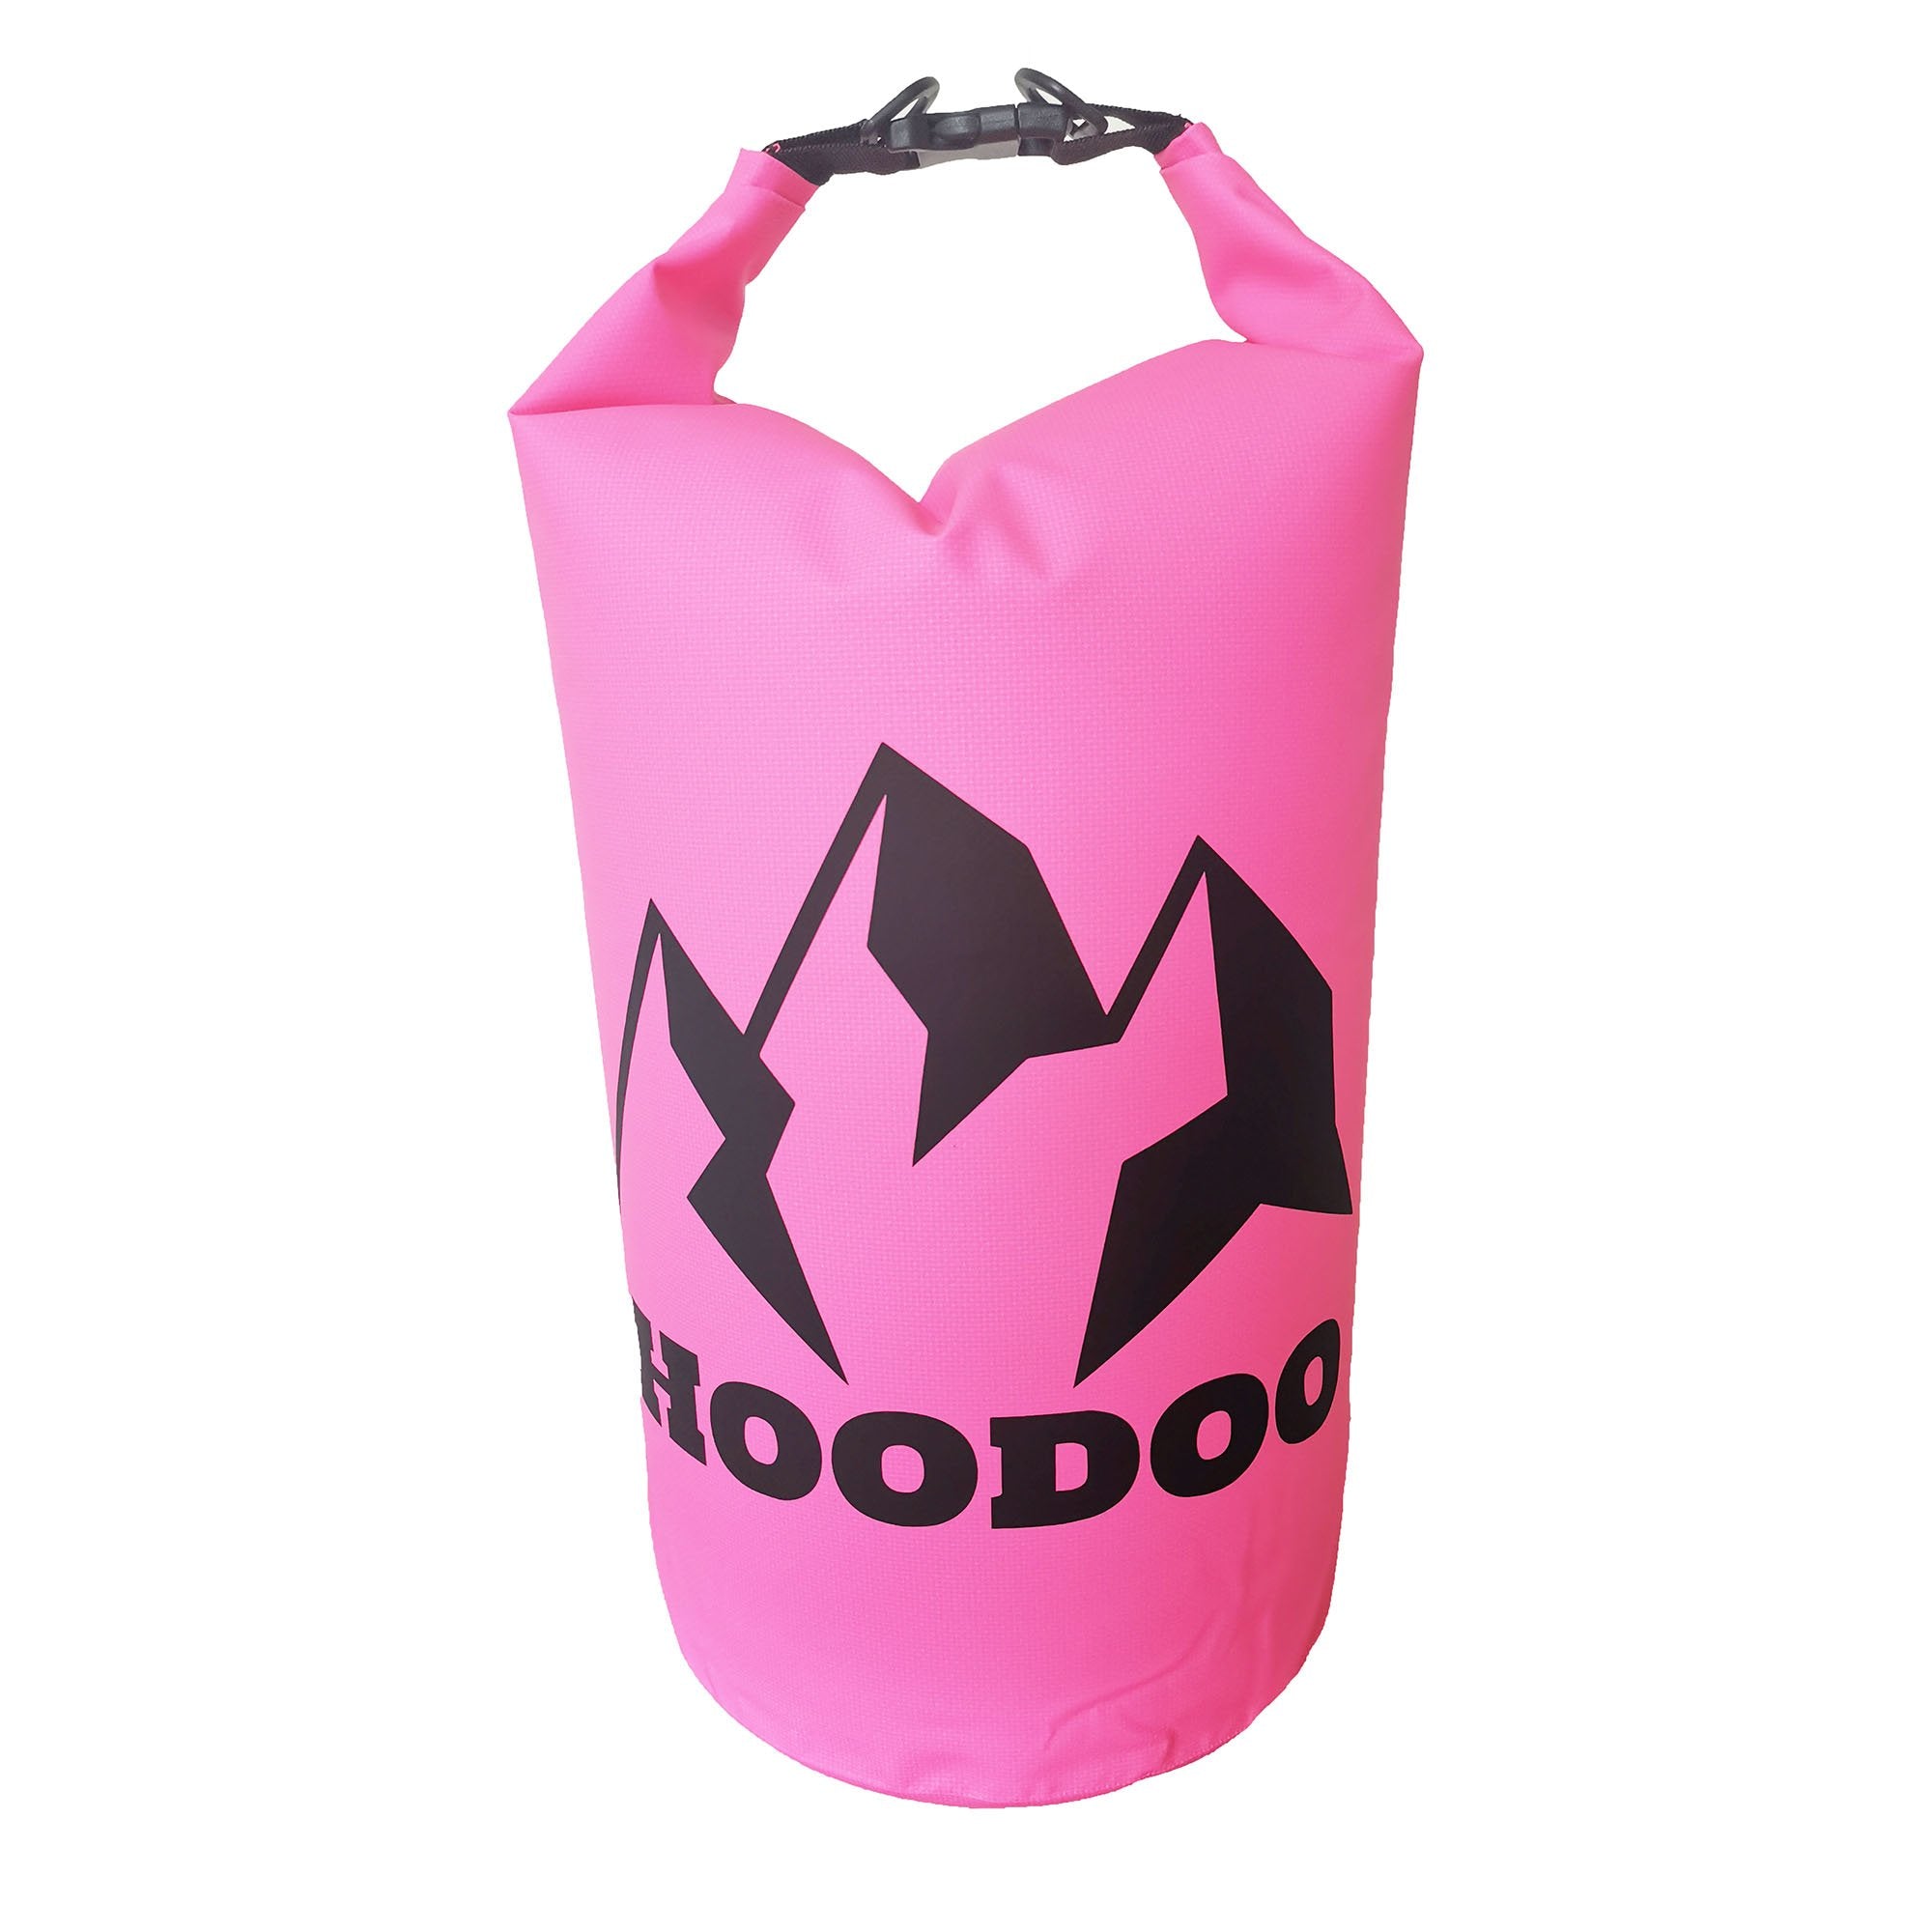 Hoodoo Floating Waterproof Dry Bag - Hoodoo Sports